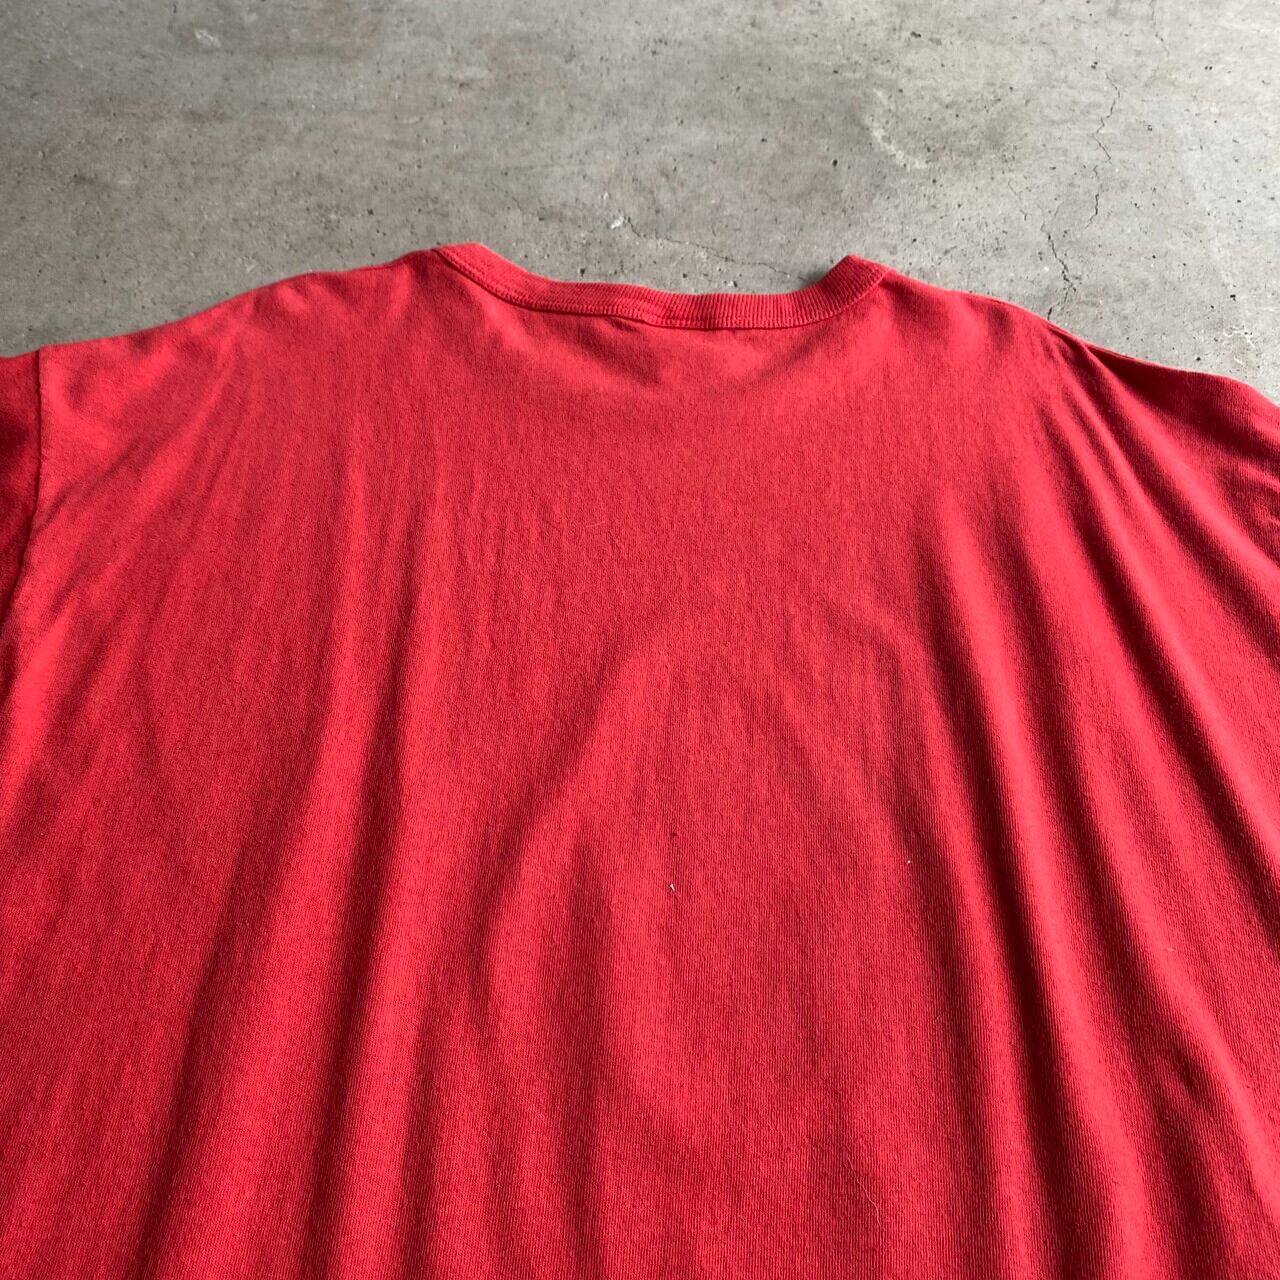 ビッグサイズ 年代  ディズニー   ミッキーマウス サンタクロース キャラクタープリント ロング丈 Tシャツ  メンズ相当 レディース 古着 レッド 赤色 フリーサイズ ユニセックス  ヴィンテージ ビンテージ